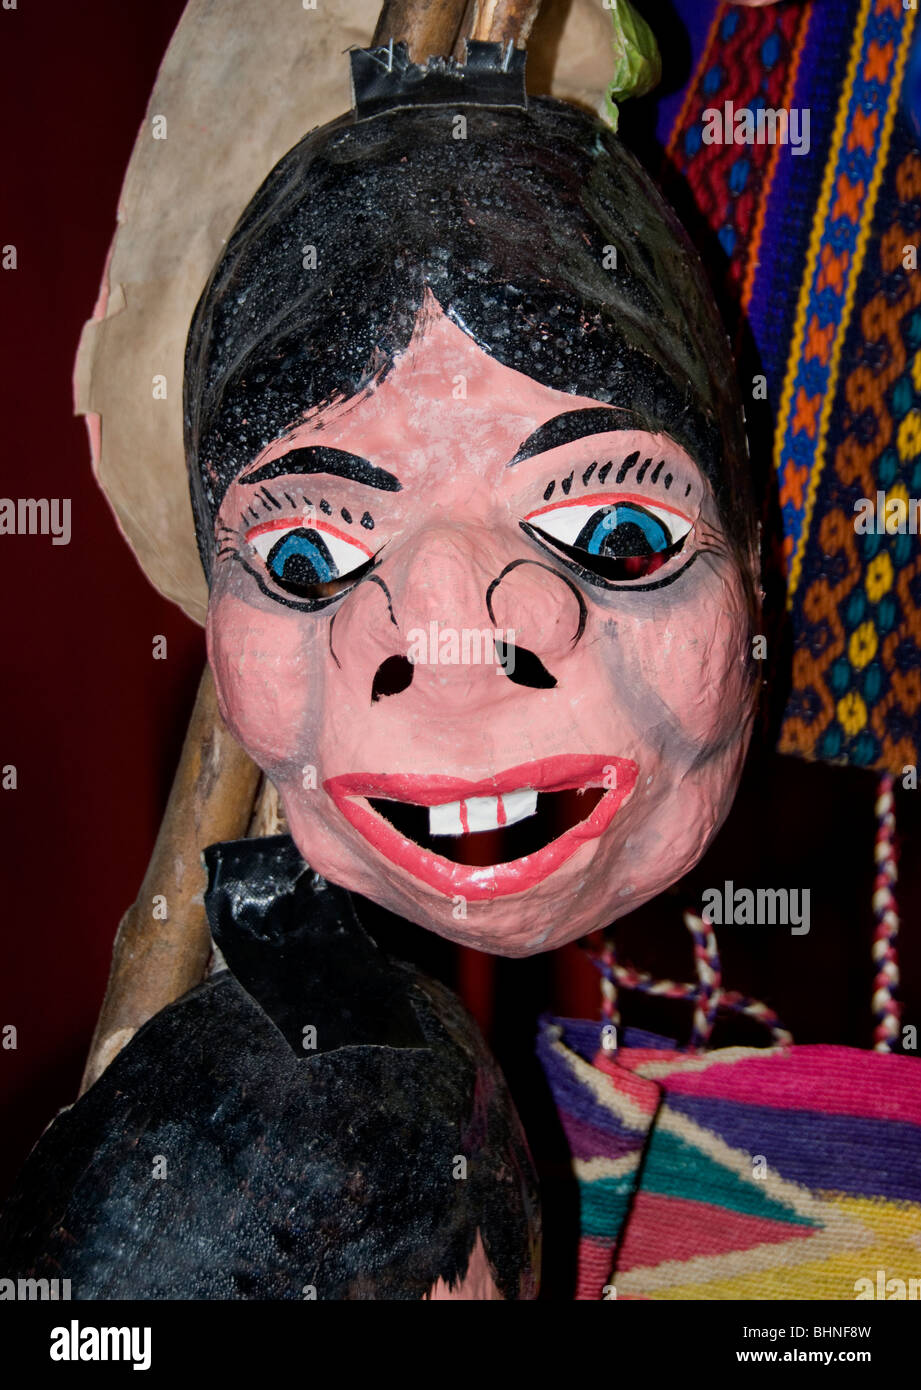 Flohmarkt Mischung von Süd- und mittelamerikanischen Puppe Marionette dummy Mädchen Mädchen Puppen Puppen Stockfoto